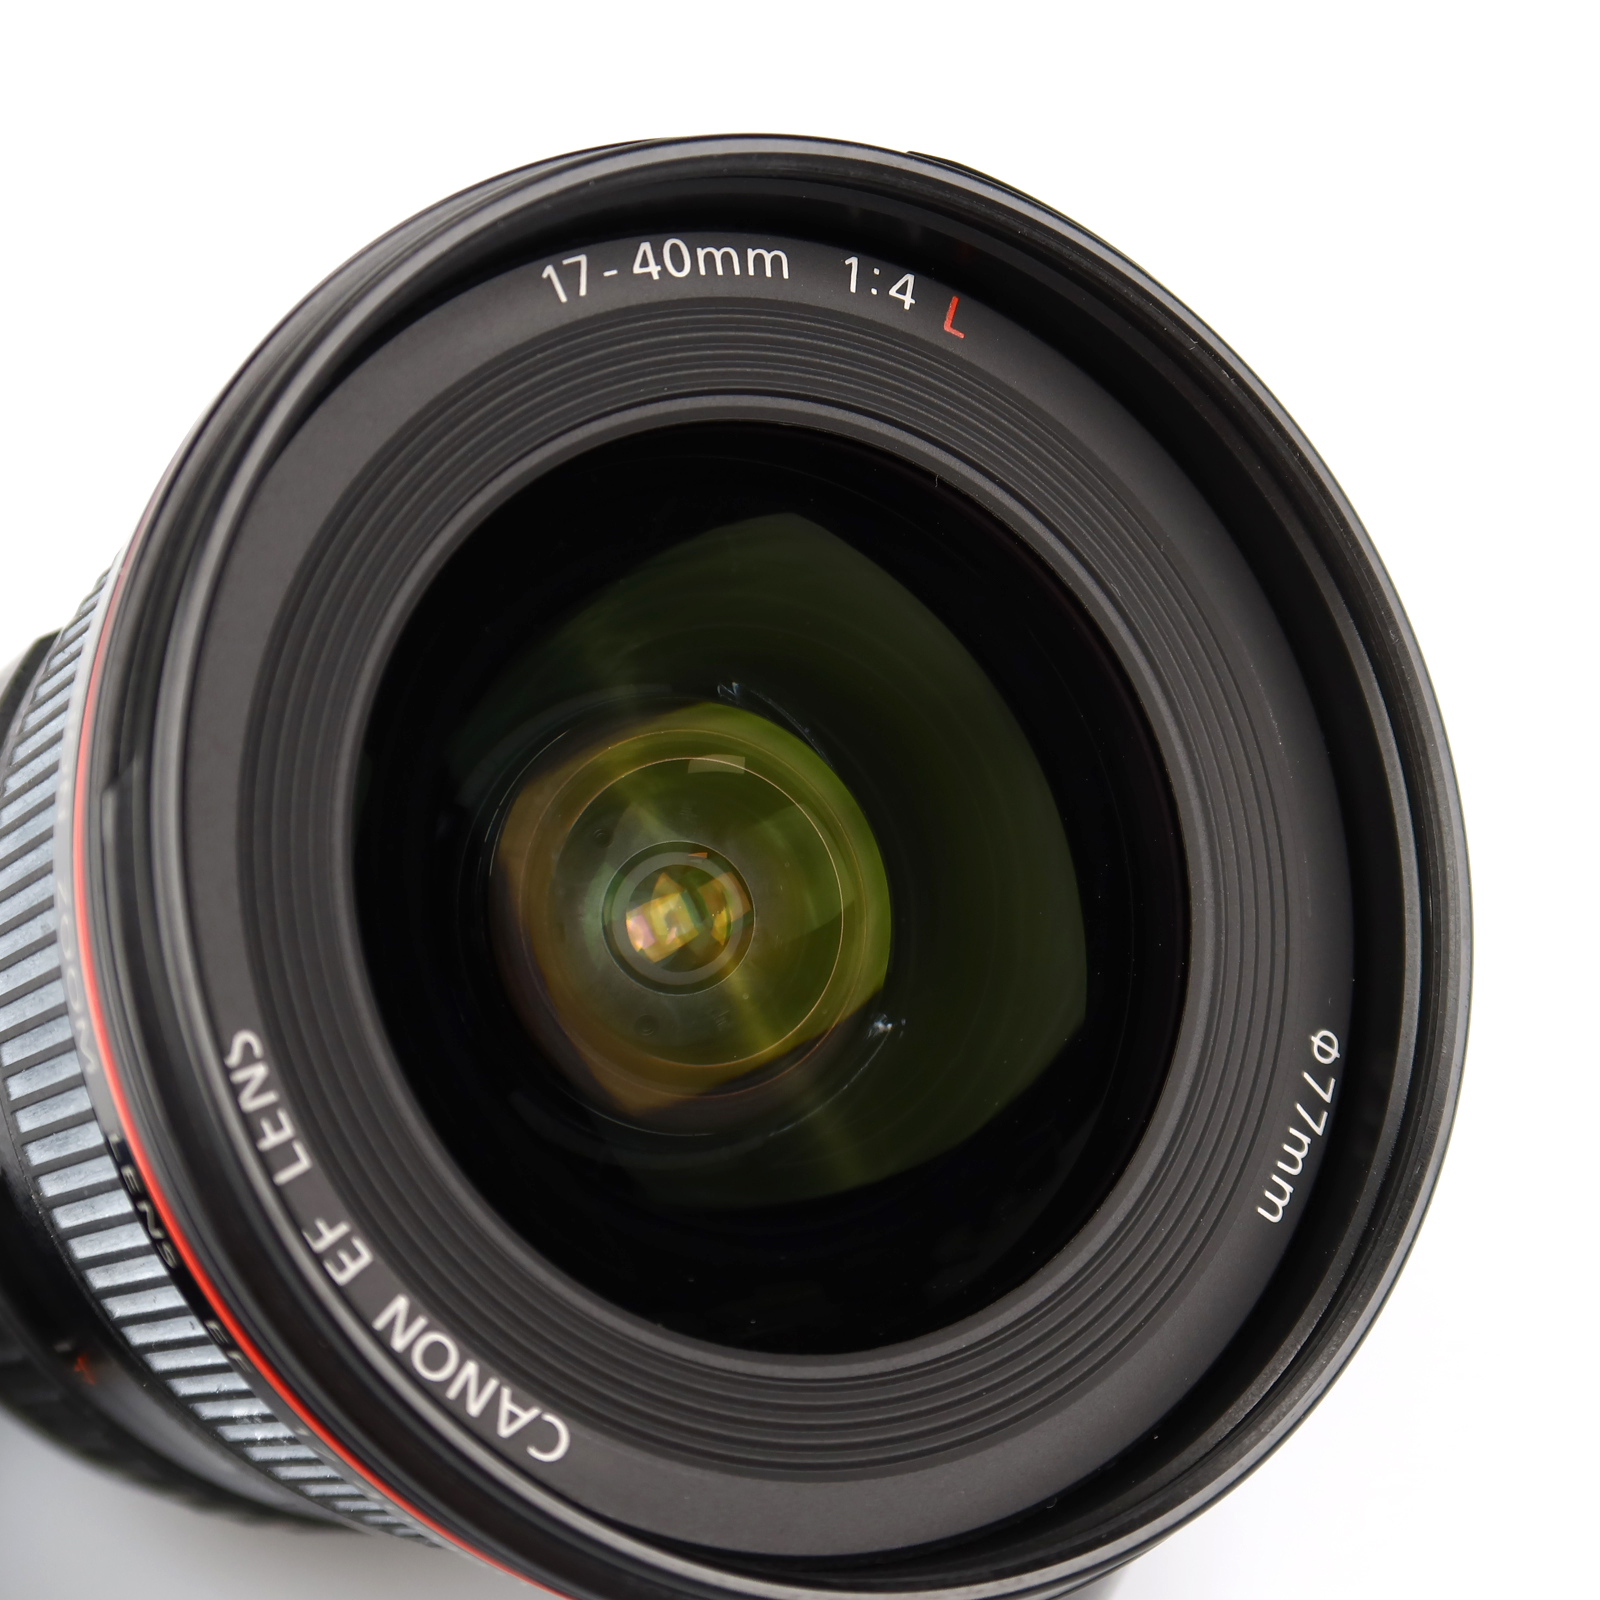 (Myyty) Canon EF 17-40mm f/4 L USM (käytetty)